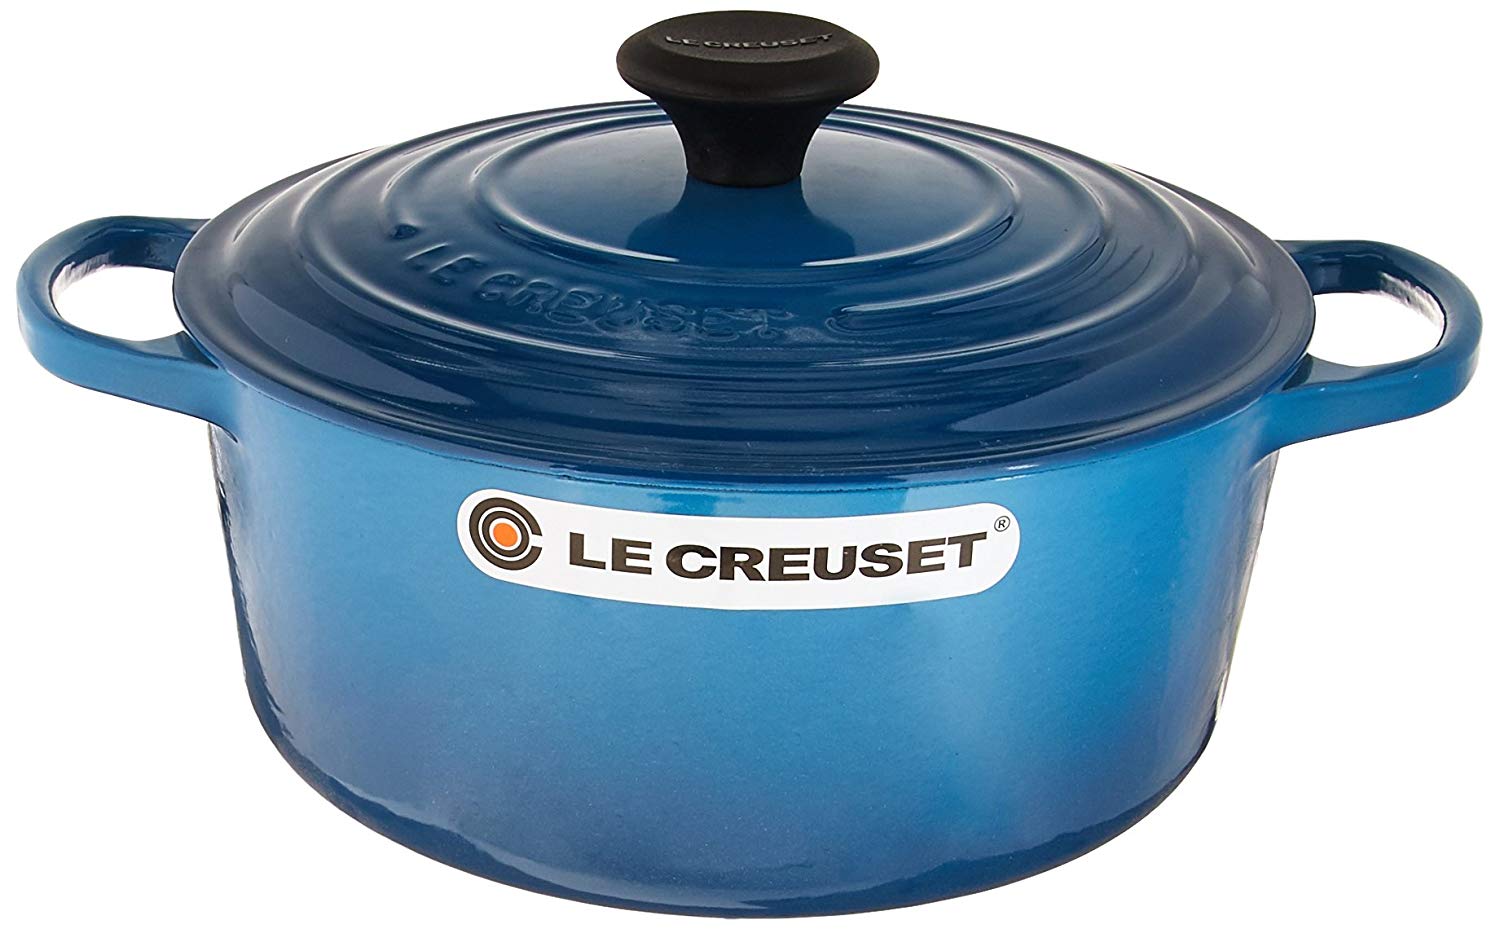 Le Creuset 3.5-Quart Signature Cast Iron Round Dutch Oven - White